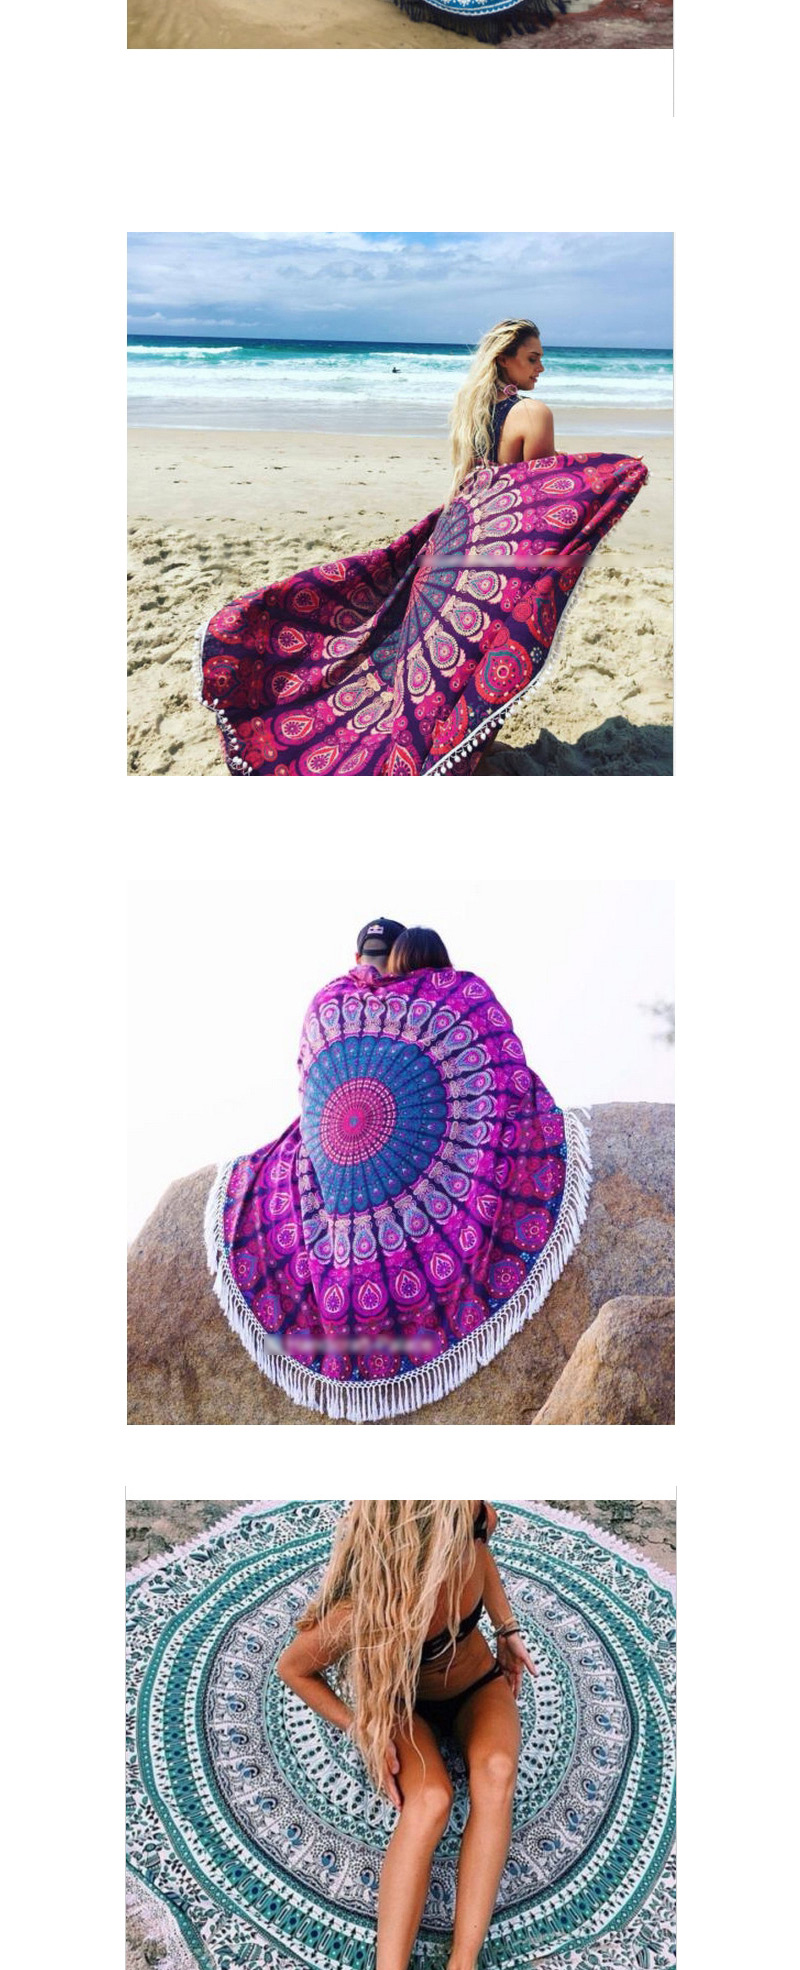 Fashion Red Geometric Flowe Pattern Decorated Tassel Yoga Mat&shawl,Swim Towels